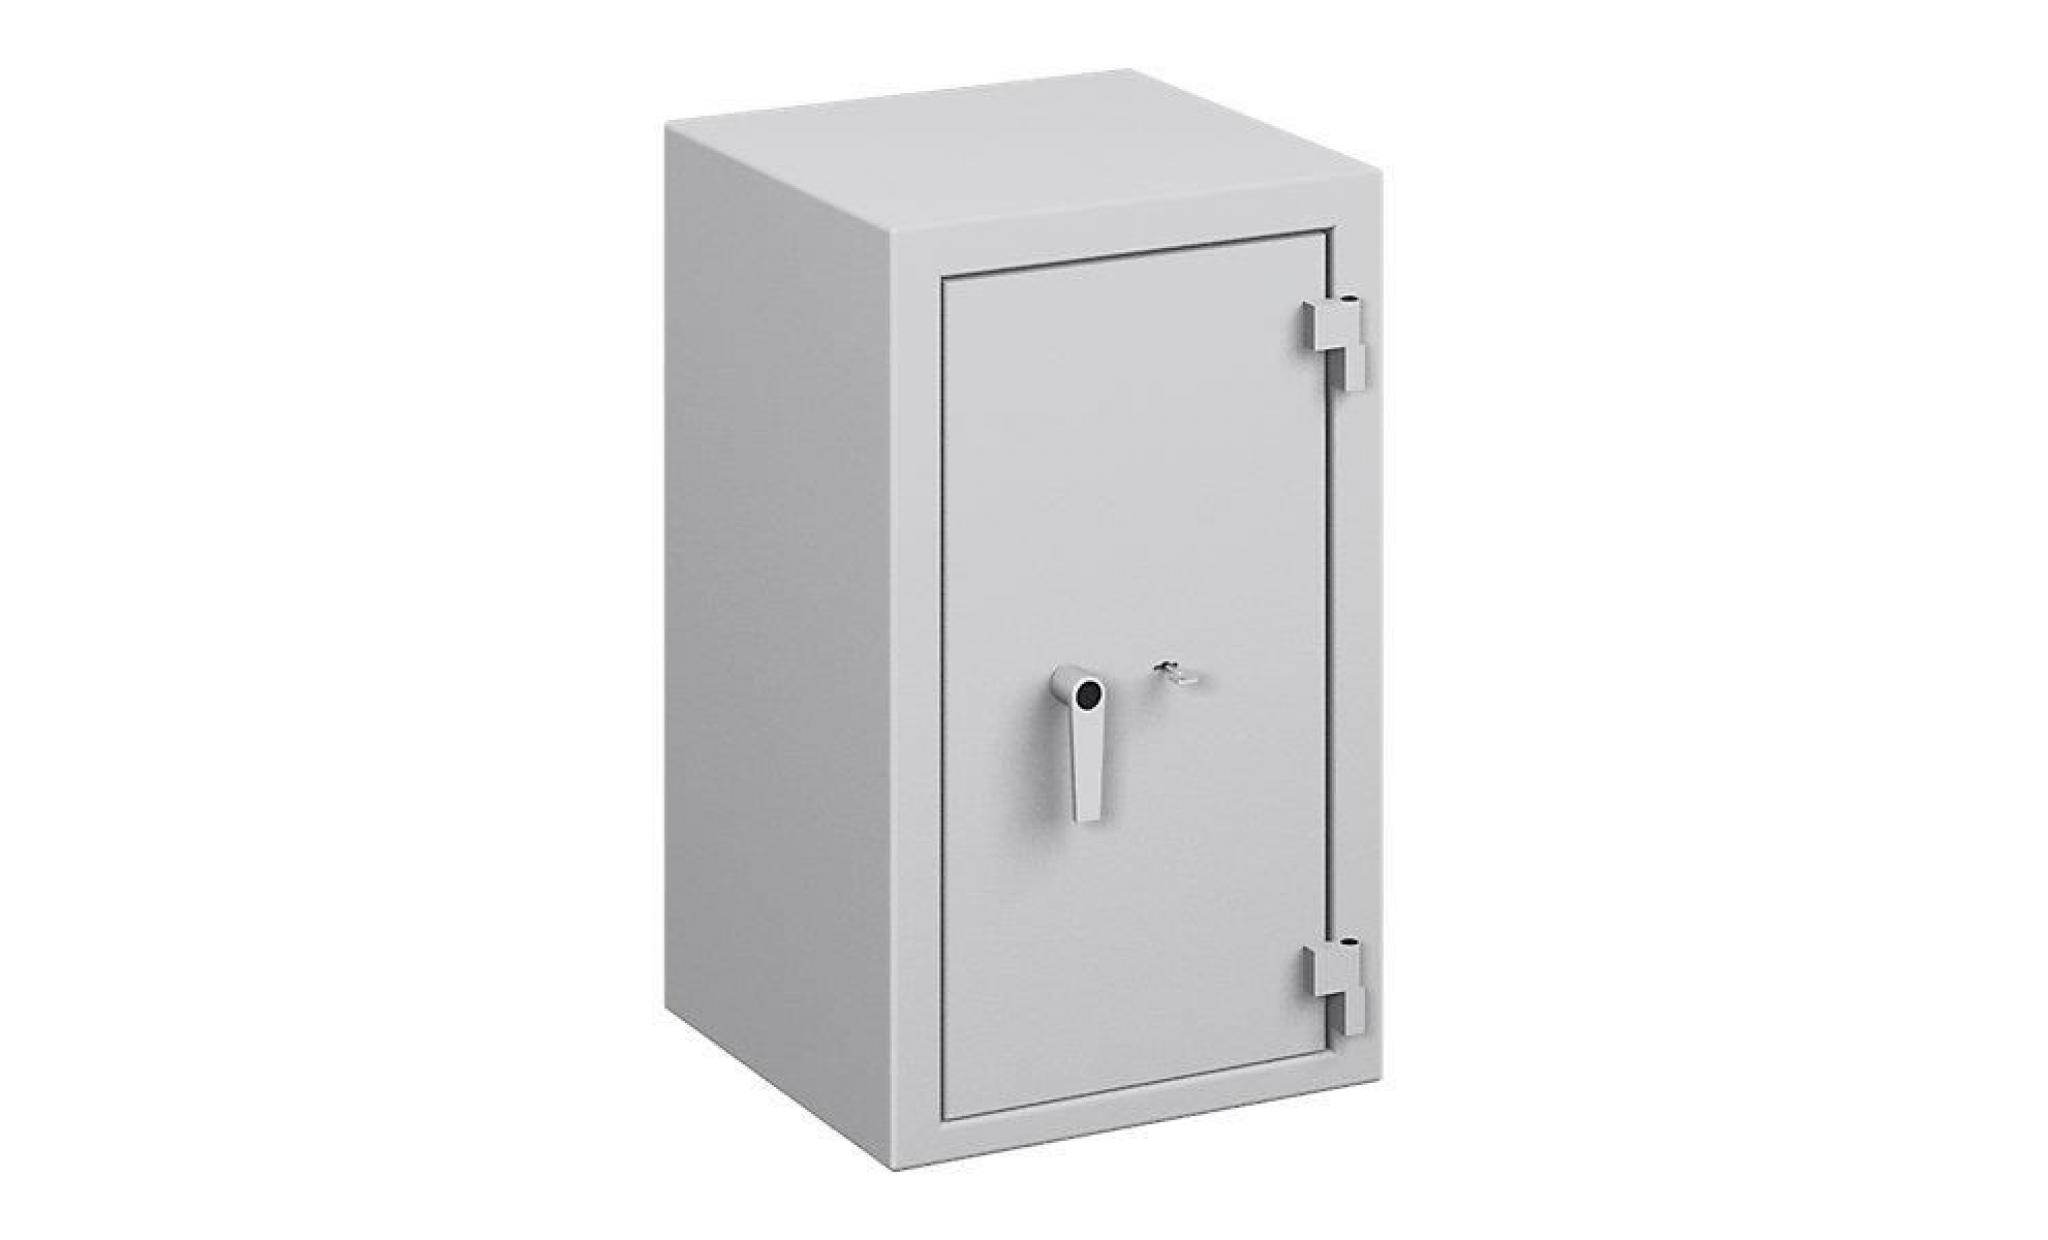 armoire de sécurité   niveau de résistance i selon les normes en 1143 1, lfs 30 p   h x l x p 1175 x 705 x 527 mm   armoire armoire